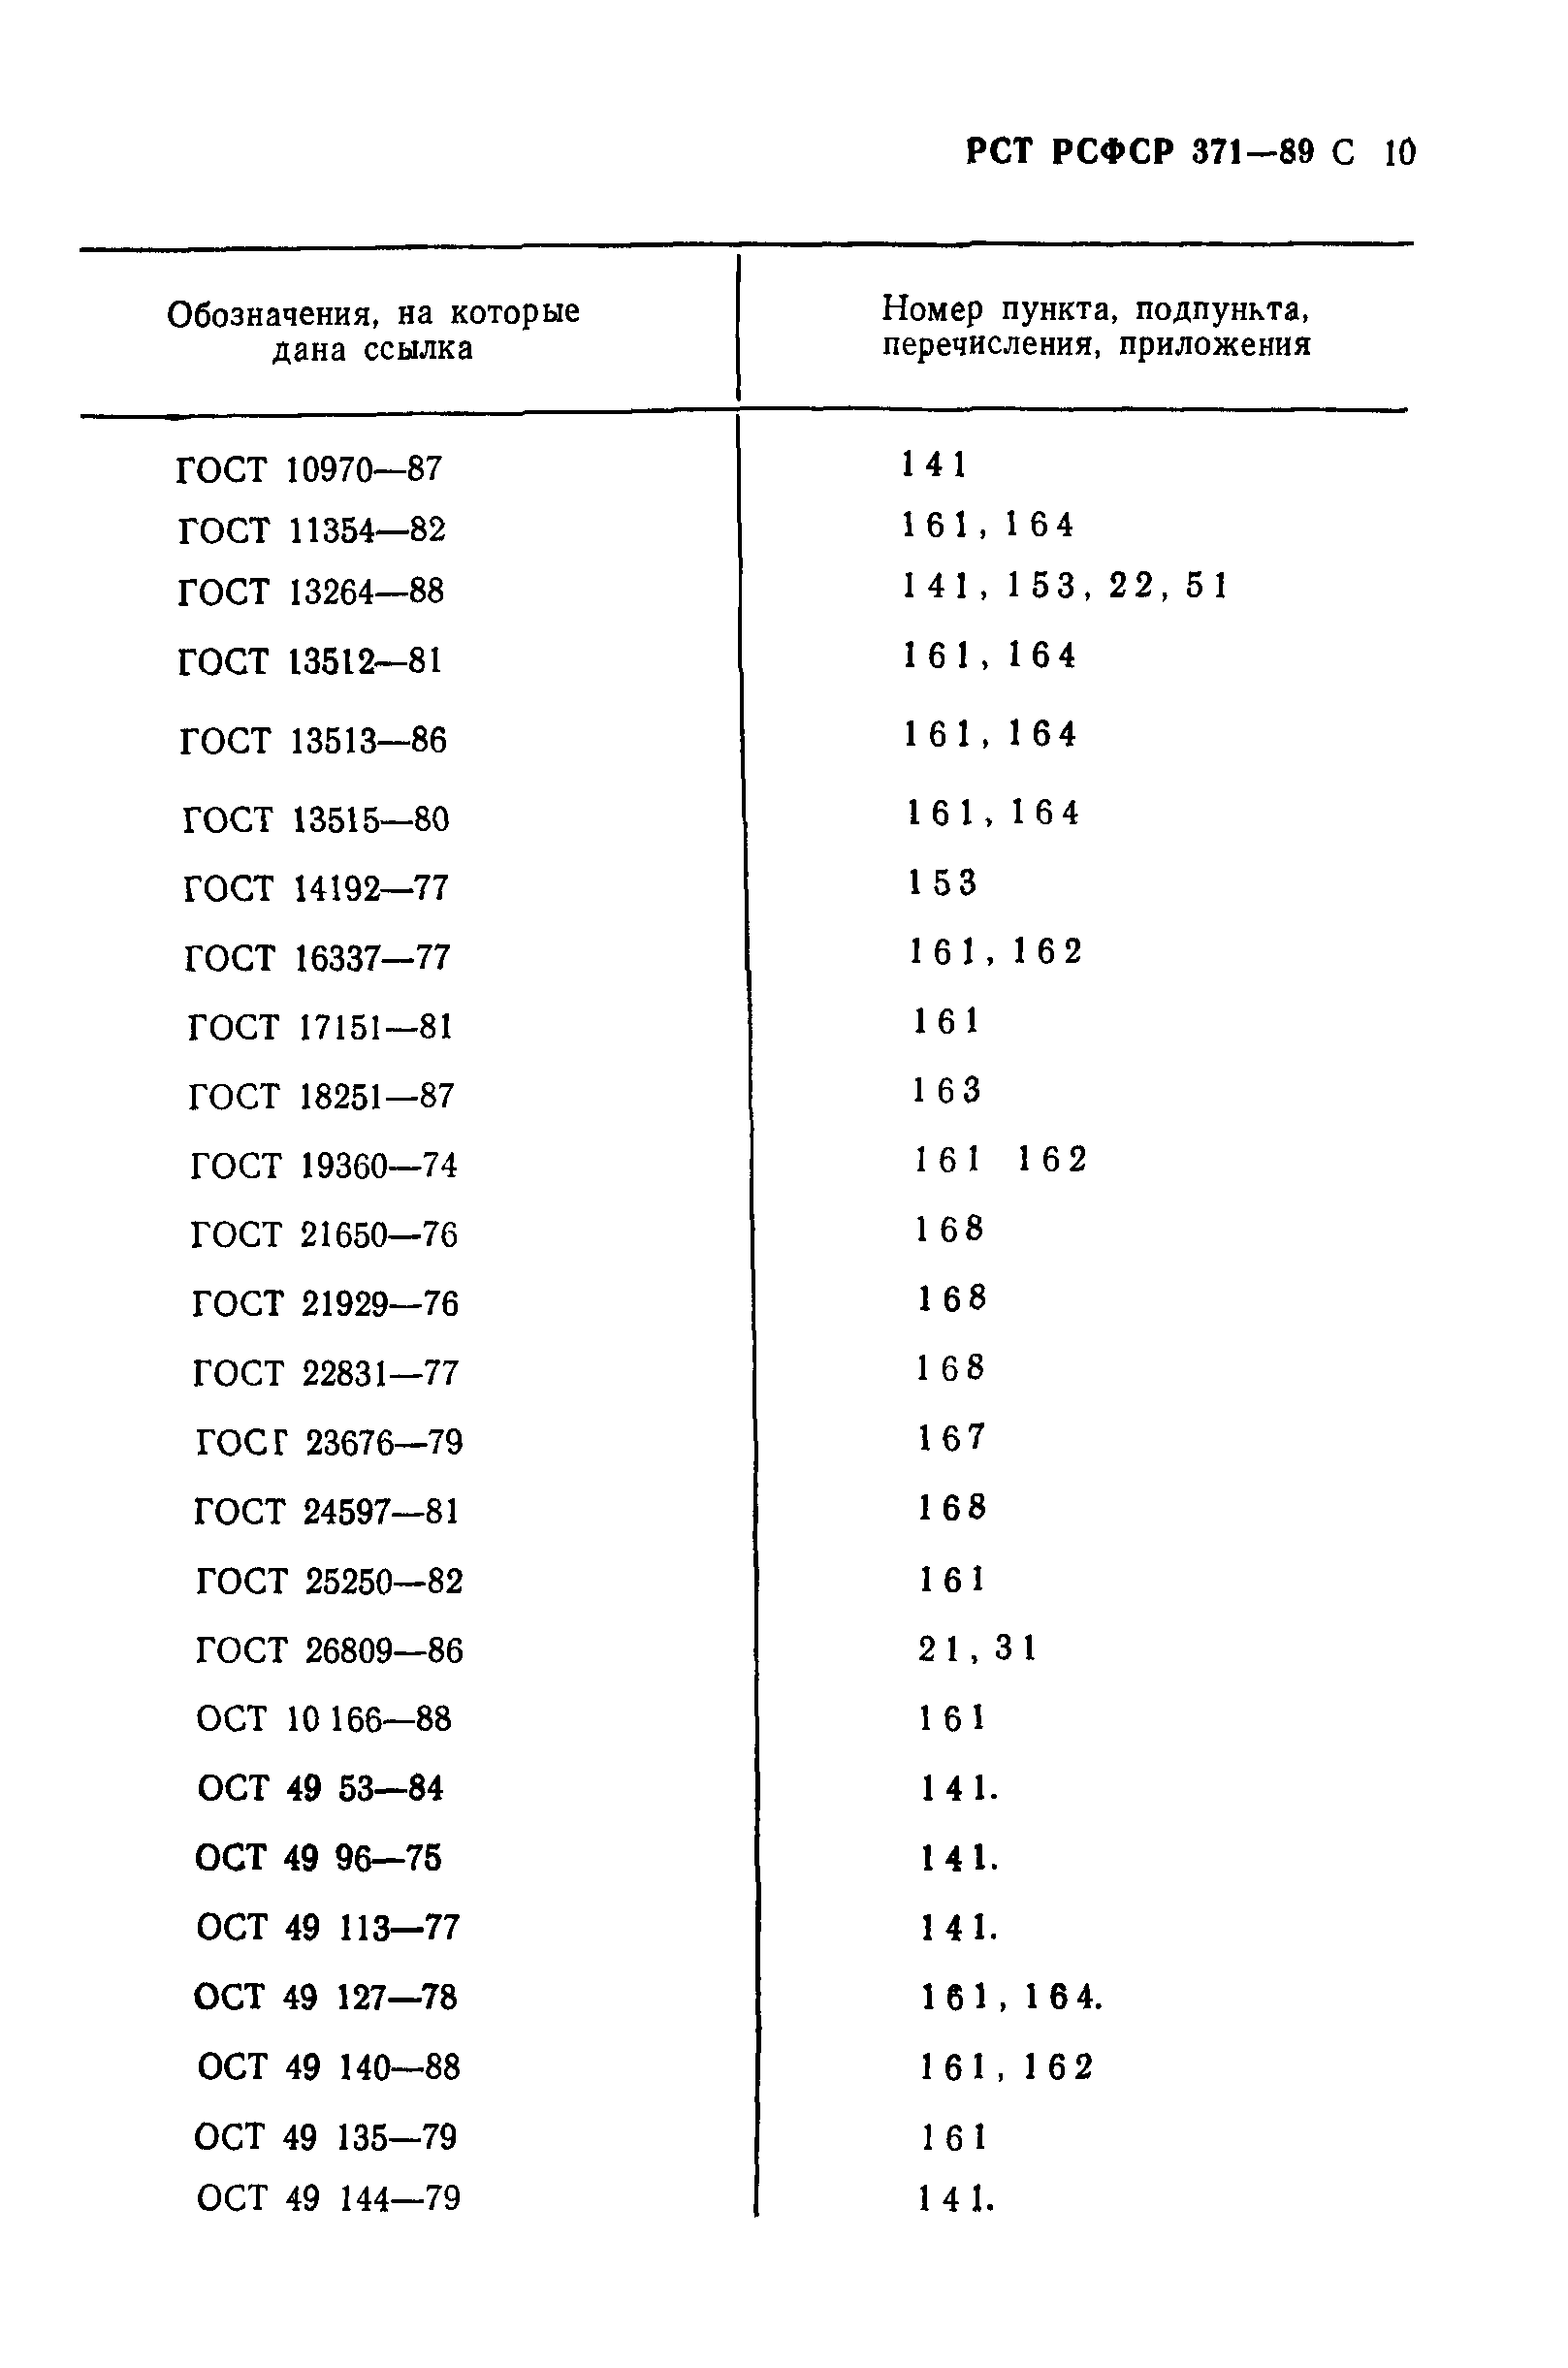 РСТ РСФСР 371-89